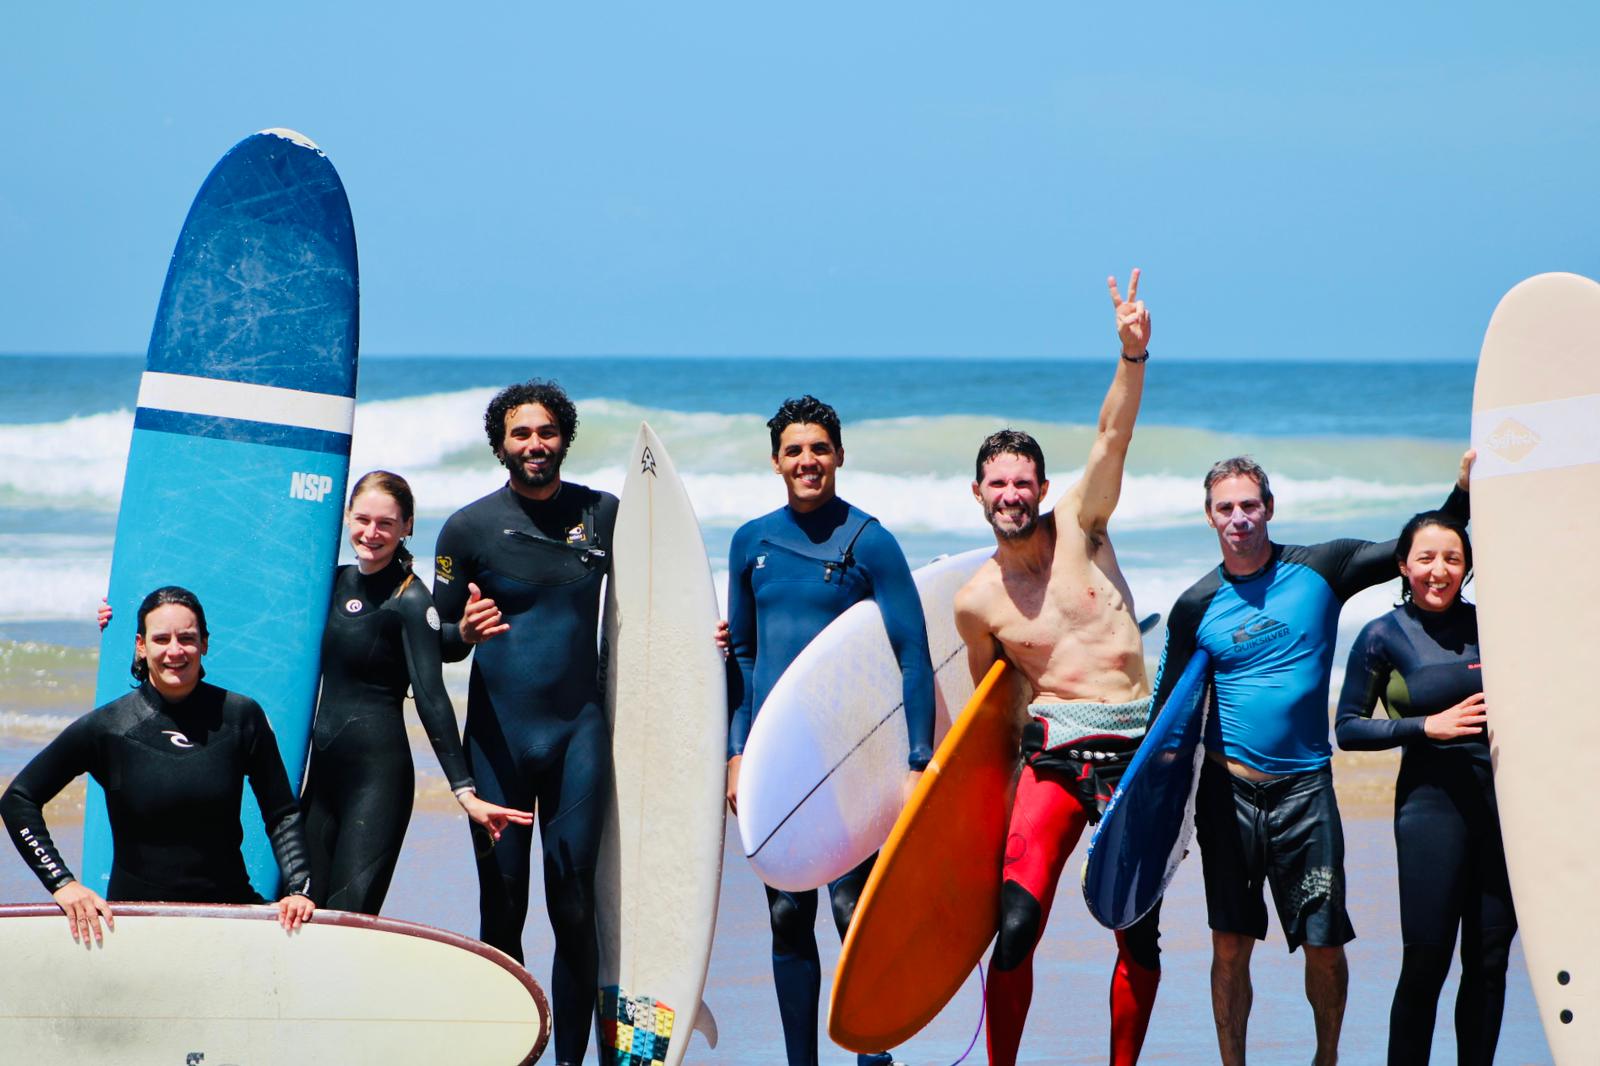 3. Olas Surf lessons